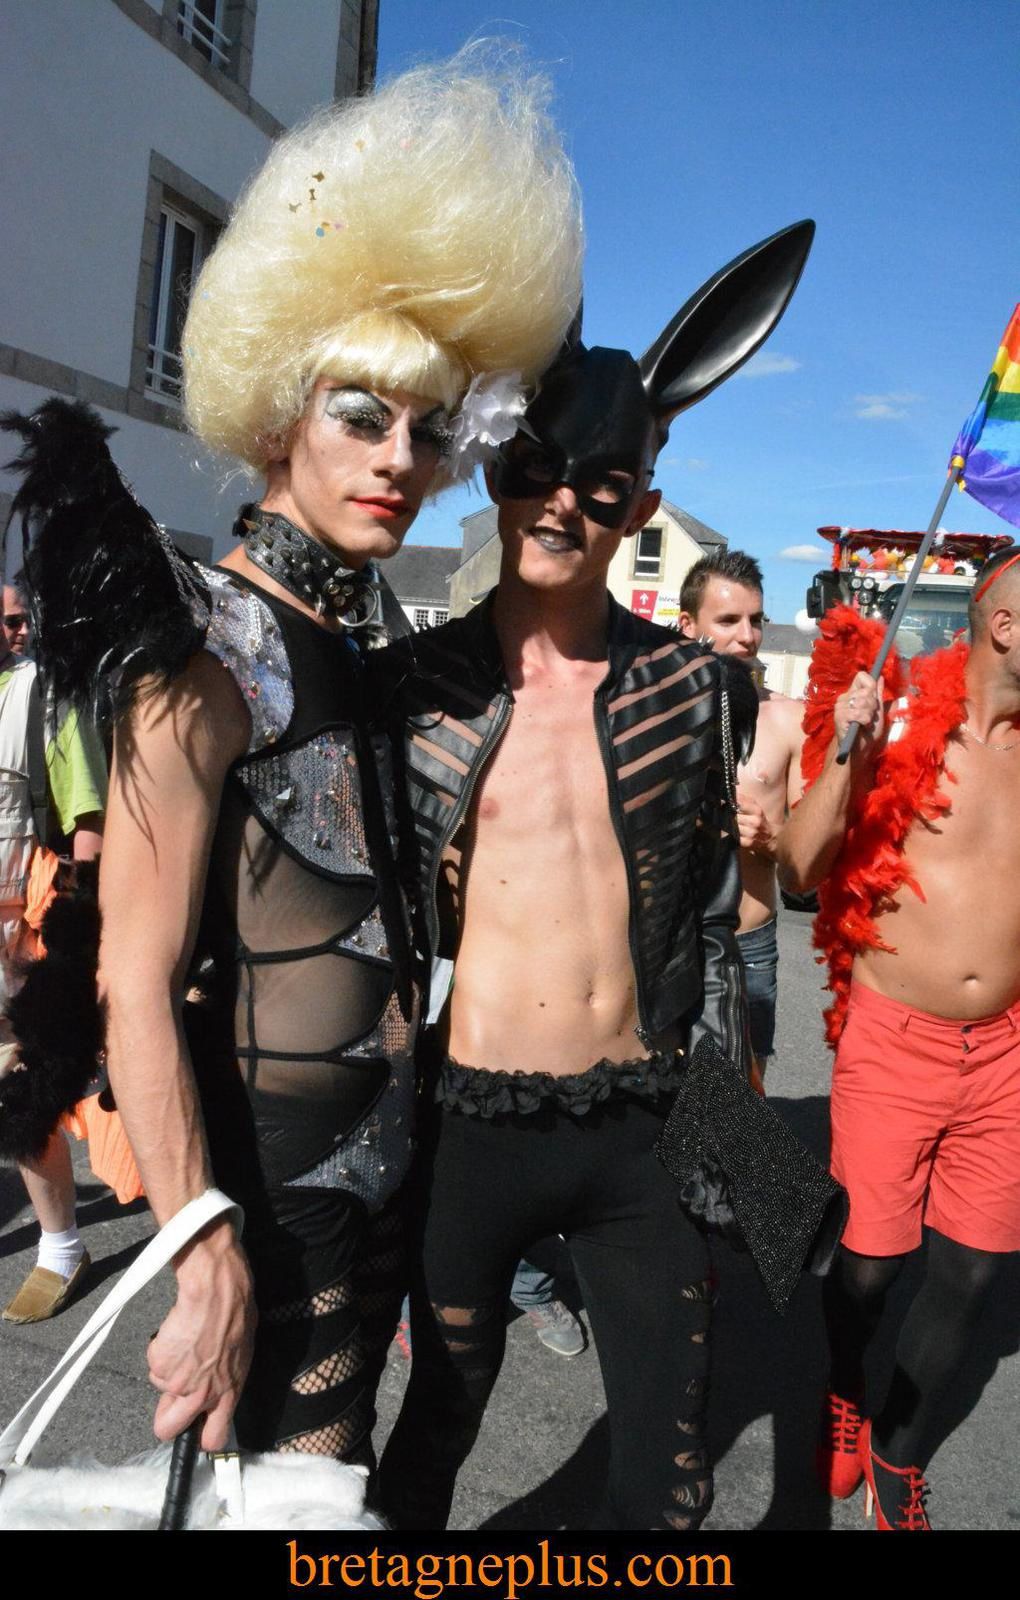 Festy-Gay 2015